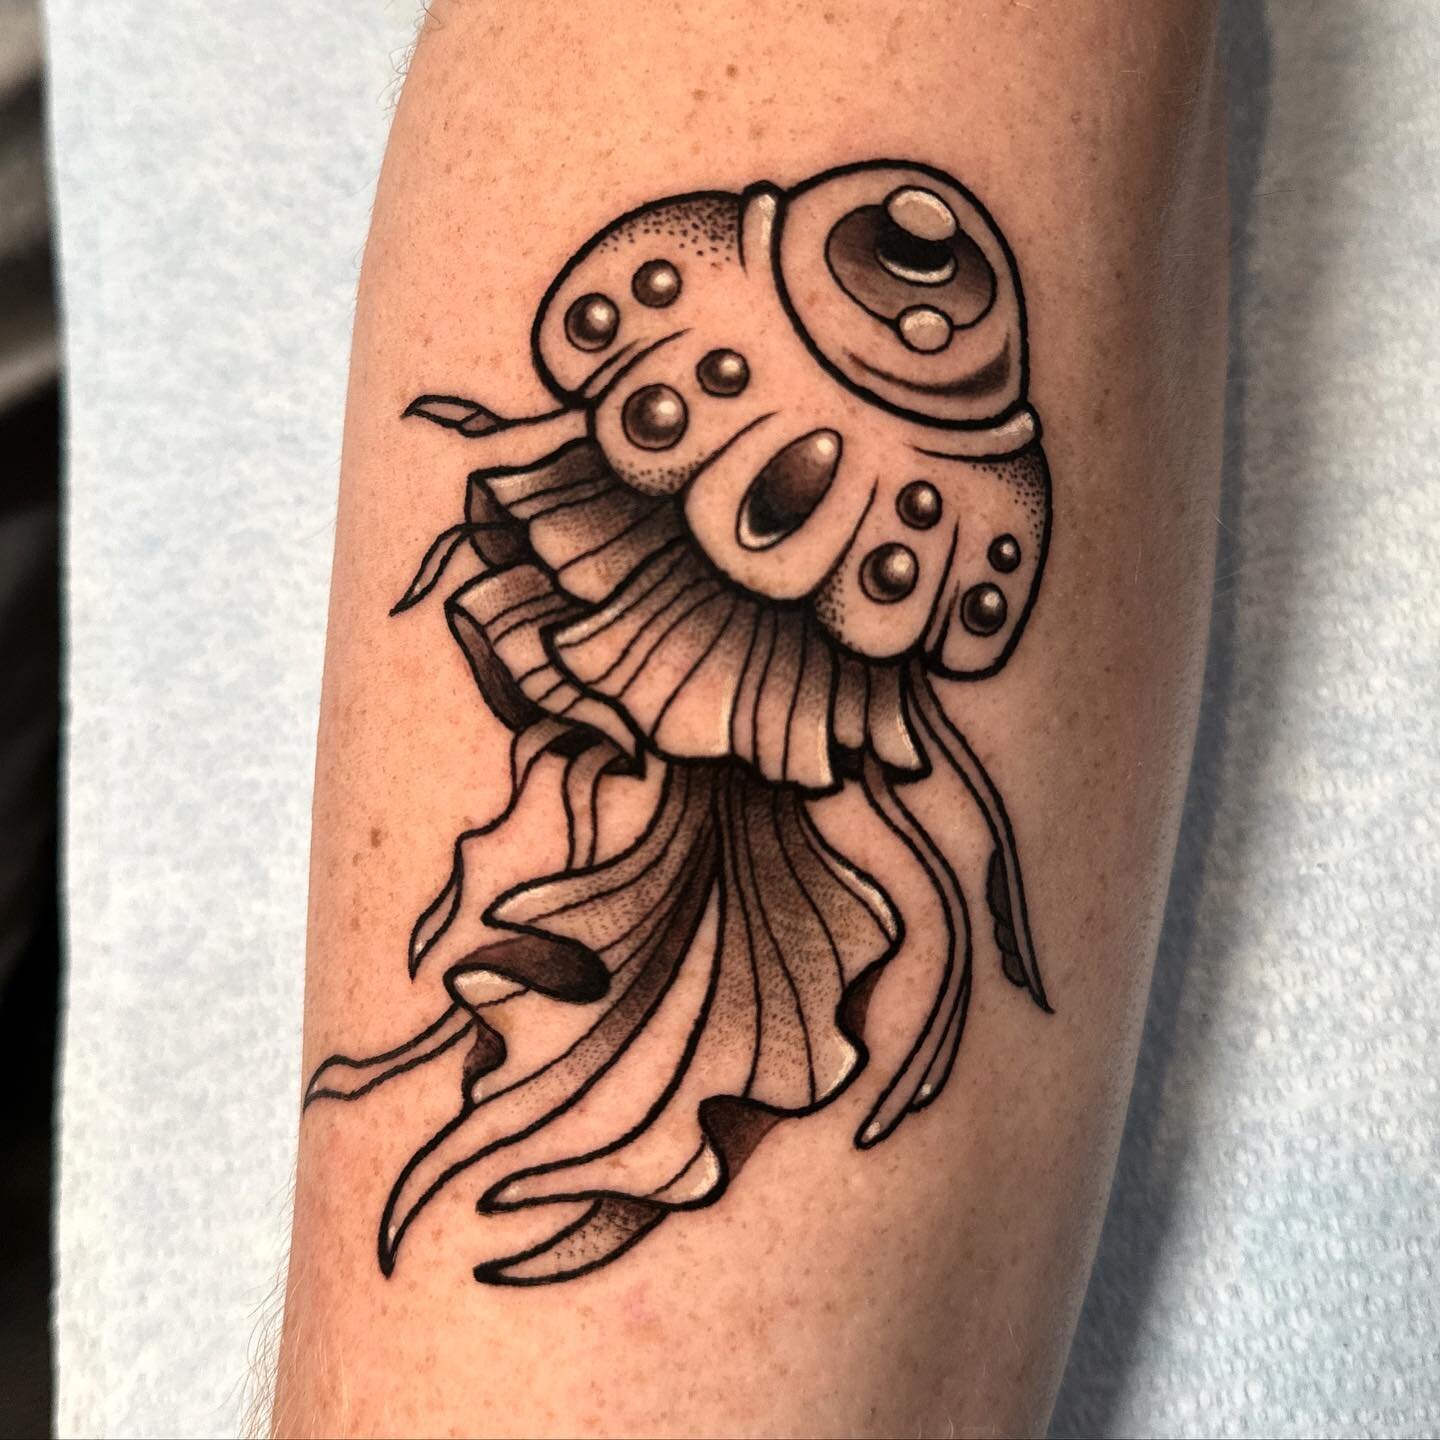 Lil jelly for @al3x635 🖤 always down to tattoo more creatures !
.
.
.
.
.
#jellyfishtattoo #jellyfish #creaturetattoos #dotworktattoo #blackandgreytattoo #jelly #tattooflash #tattooideas